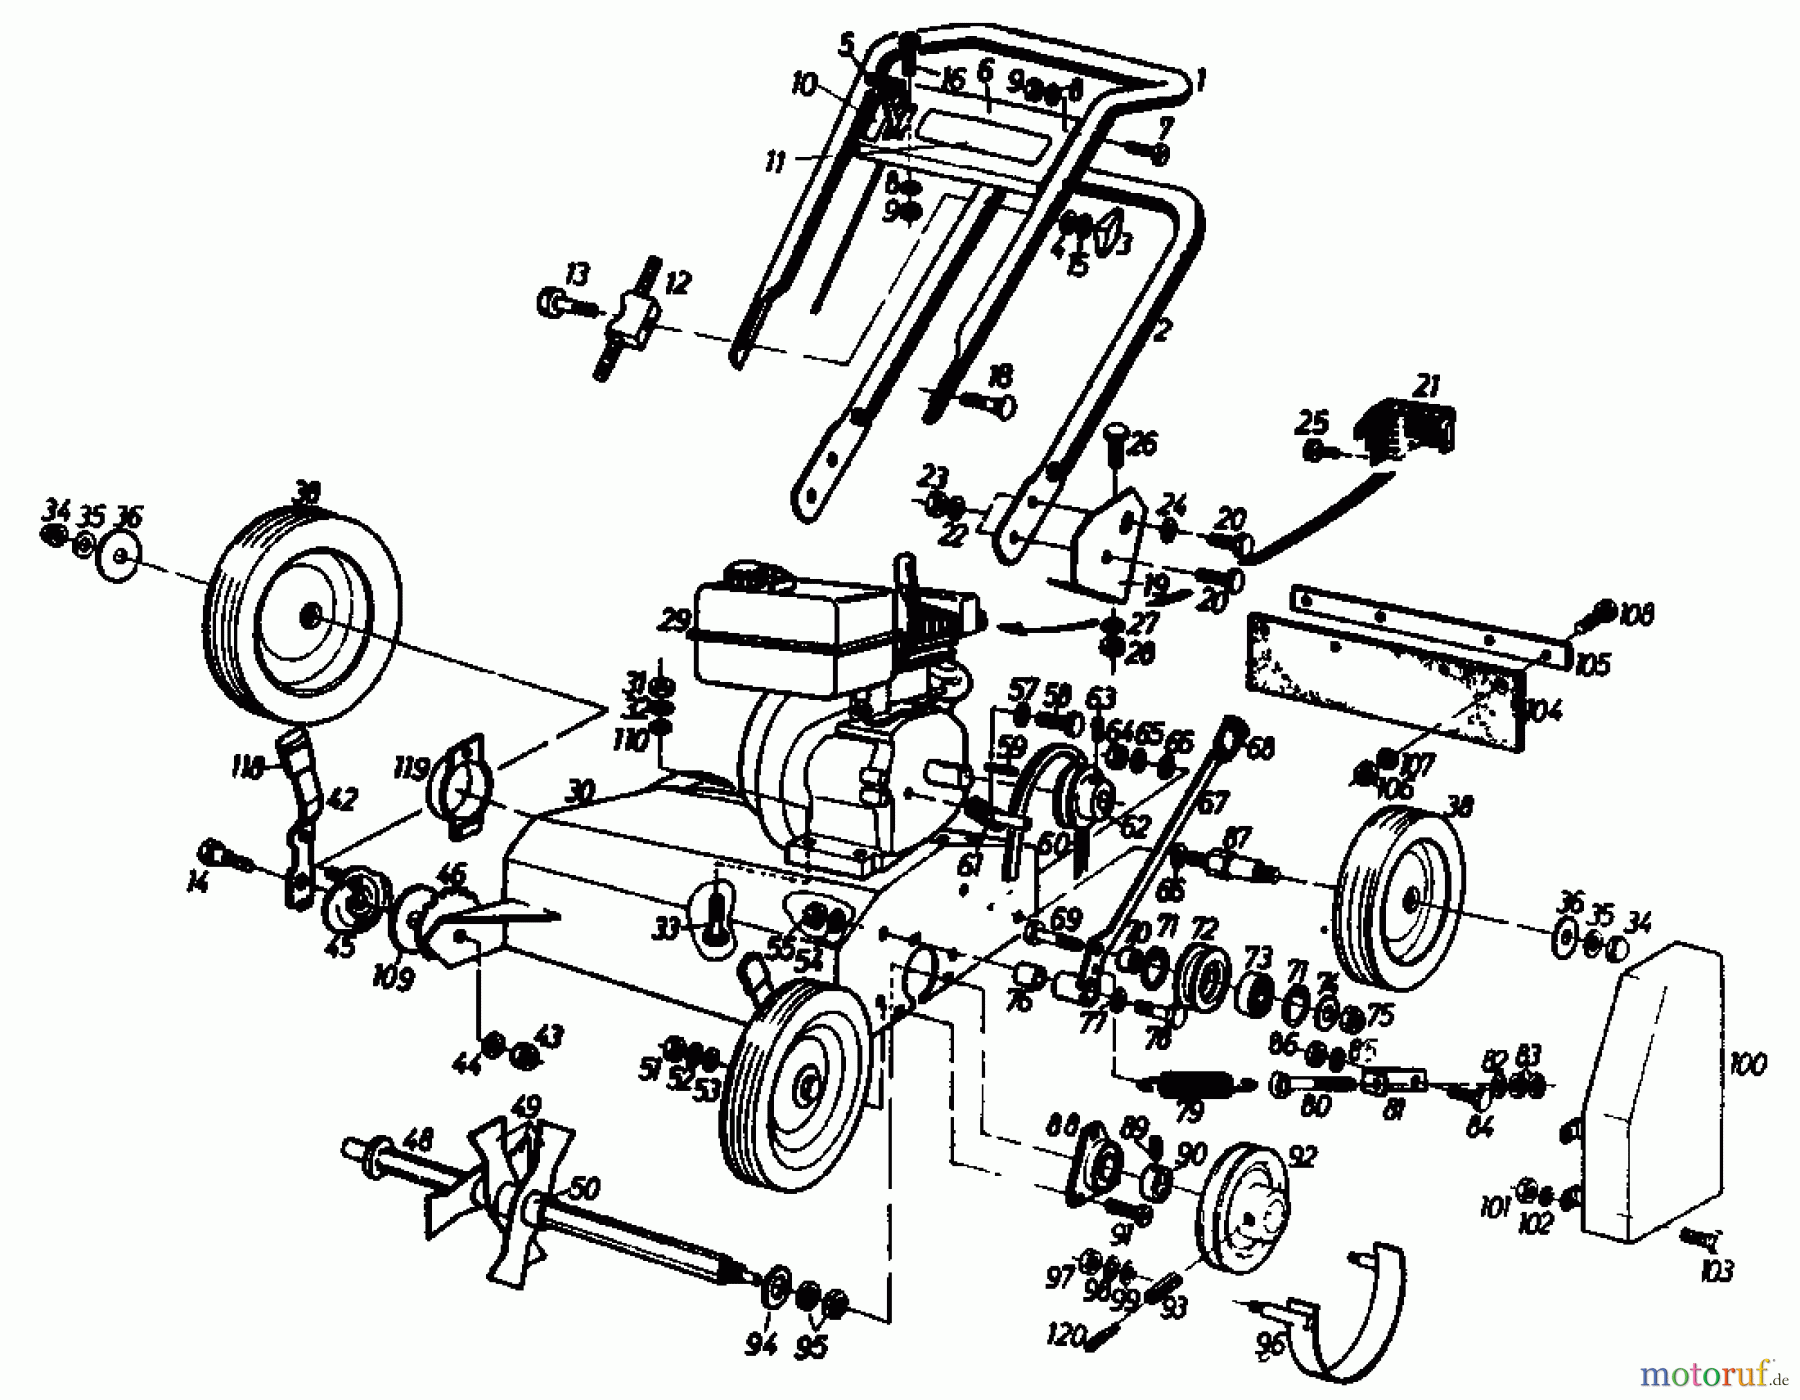  Gutbrod Petrol verticutter VS 50 A 00053.01  (1986) Basic machine